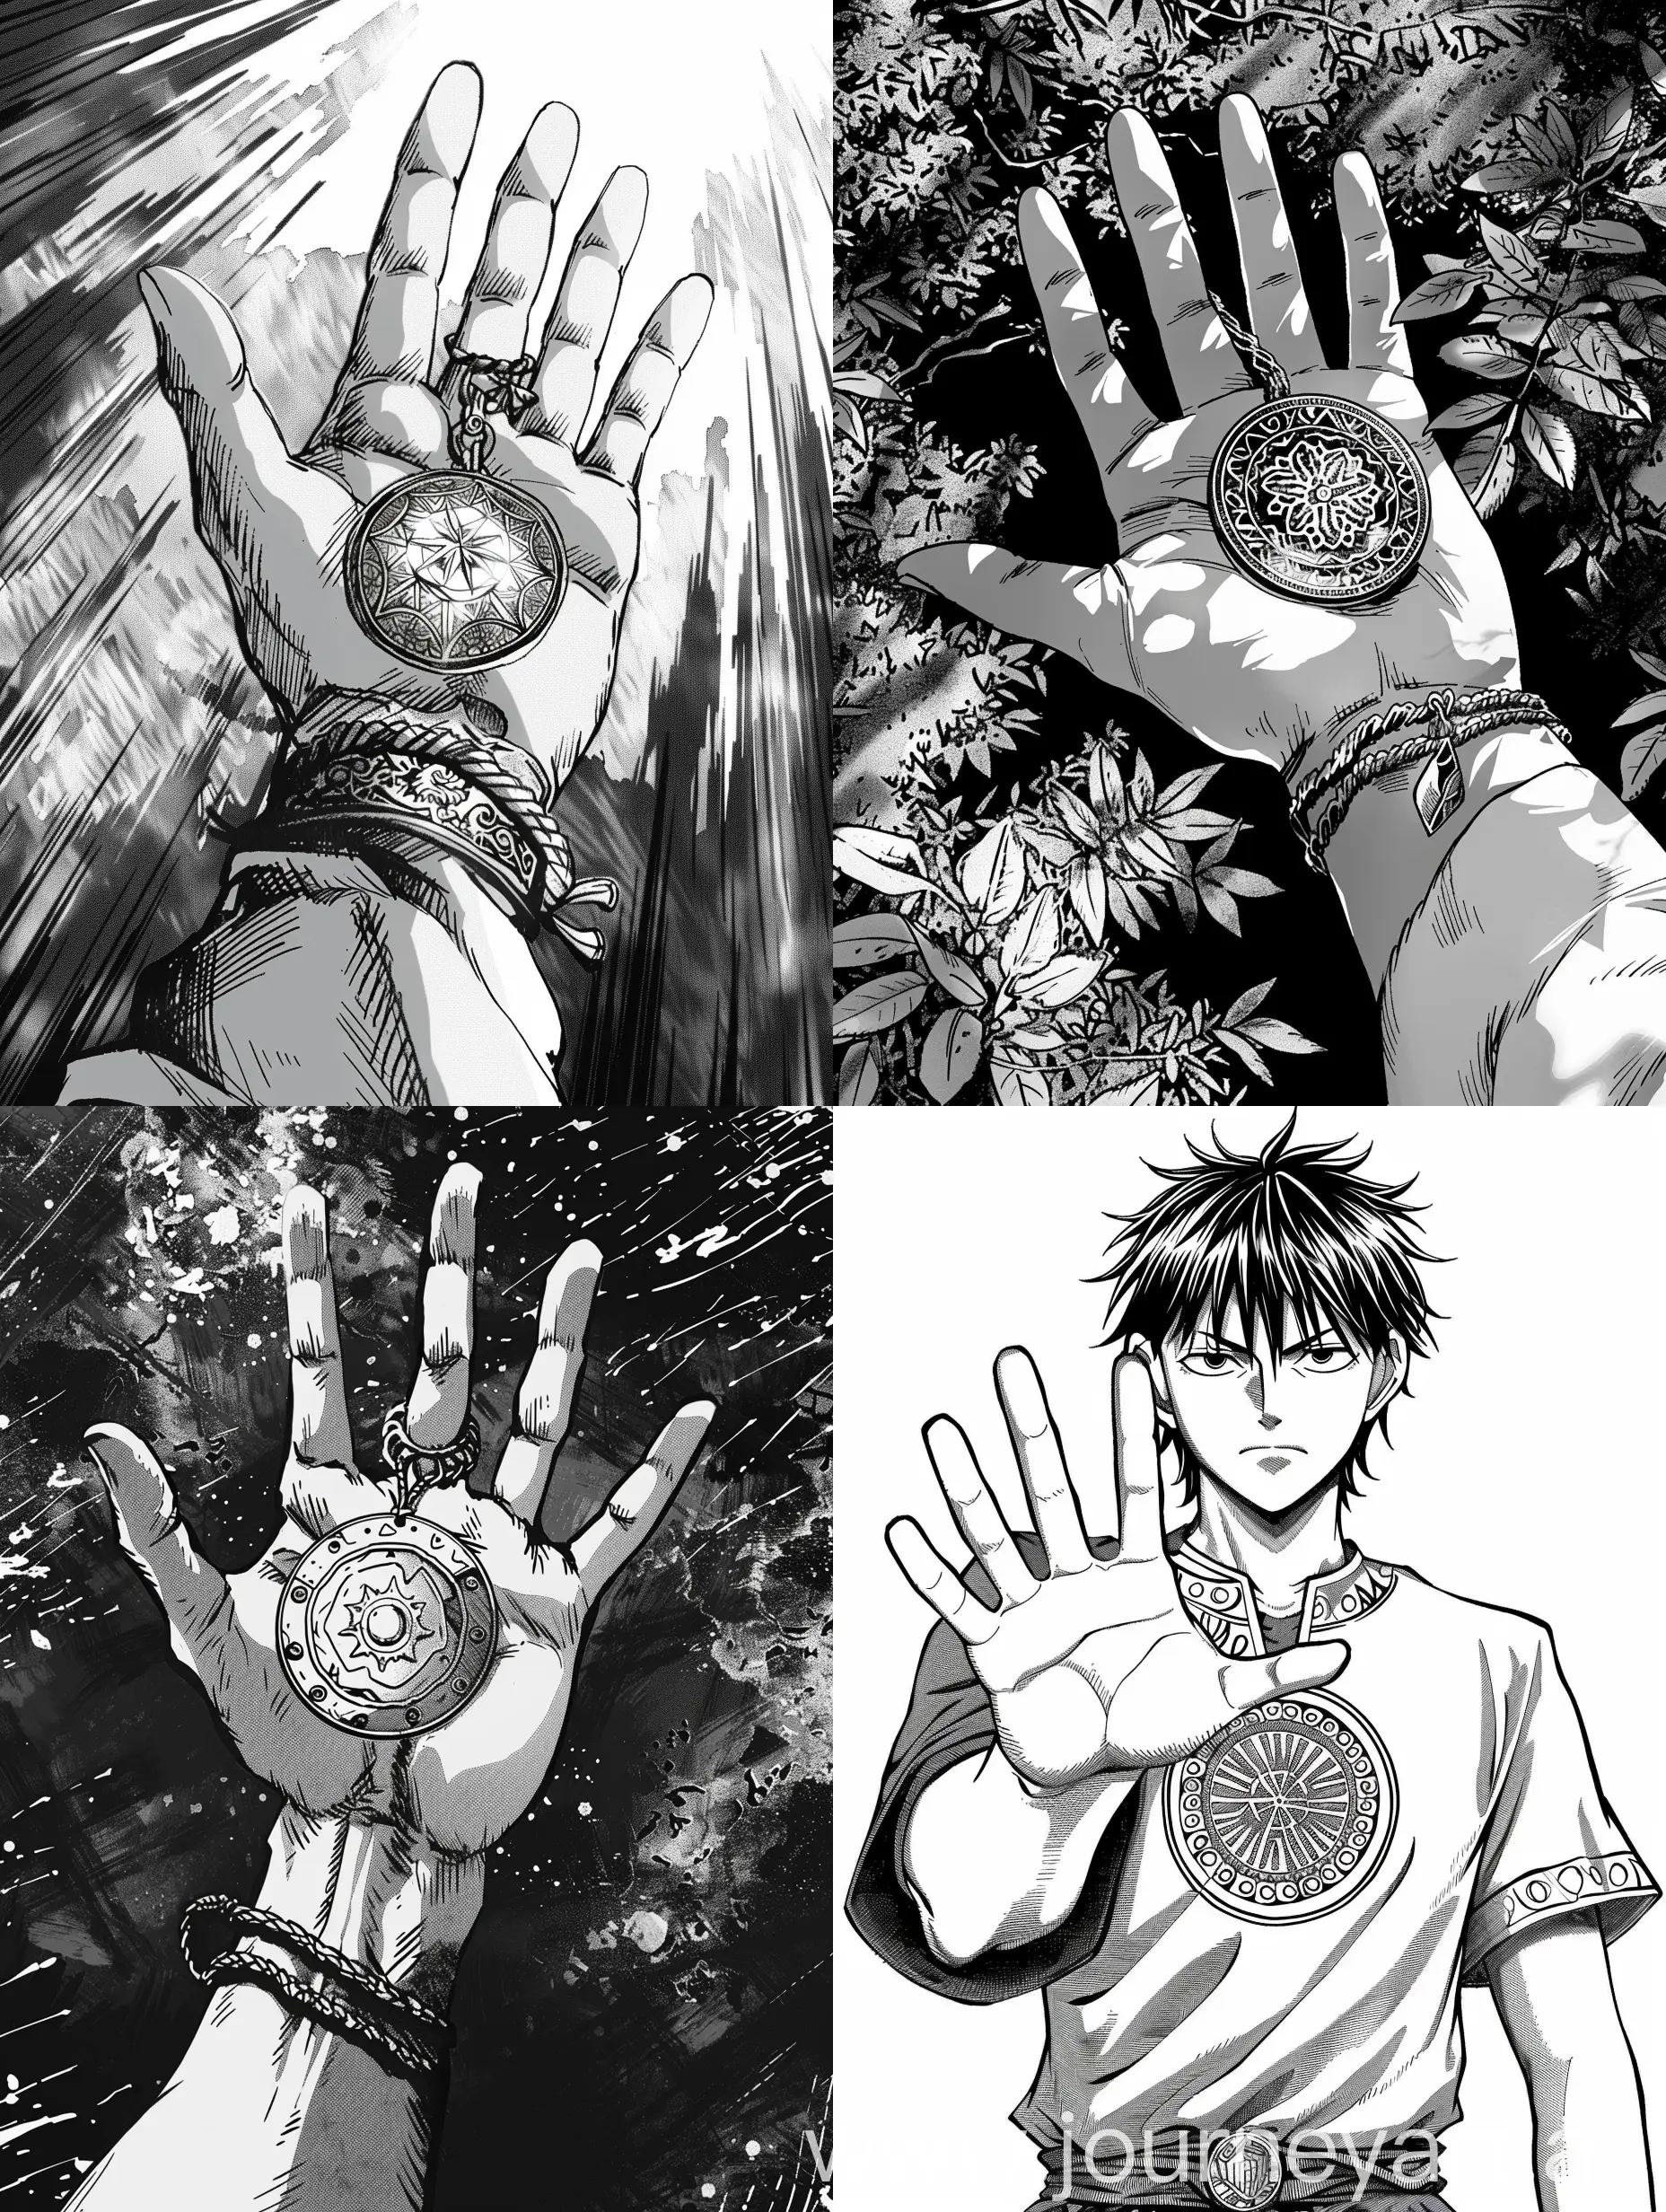 MangaStyle-Illustration-of-Hand-Holding-Amulet